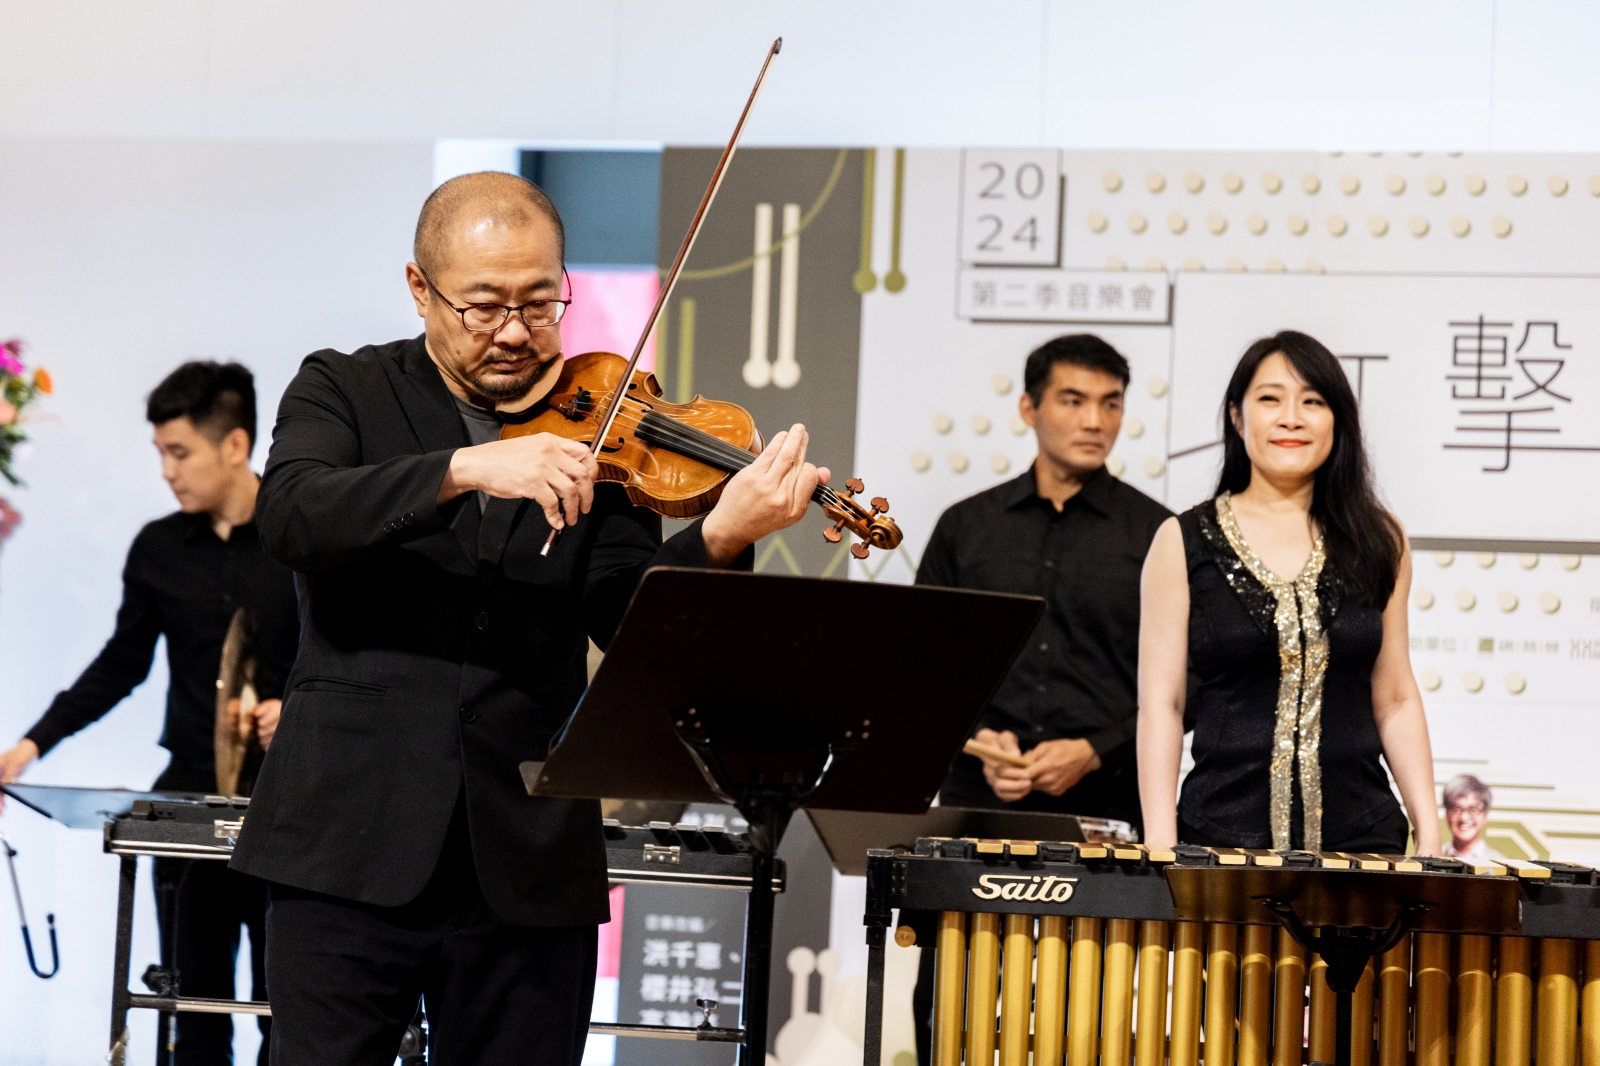 小提琴家吳庭毓與朱宗慶打擊樂團首度合作演出。圖/朱宗慶打擊樂團提供)